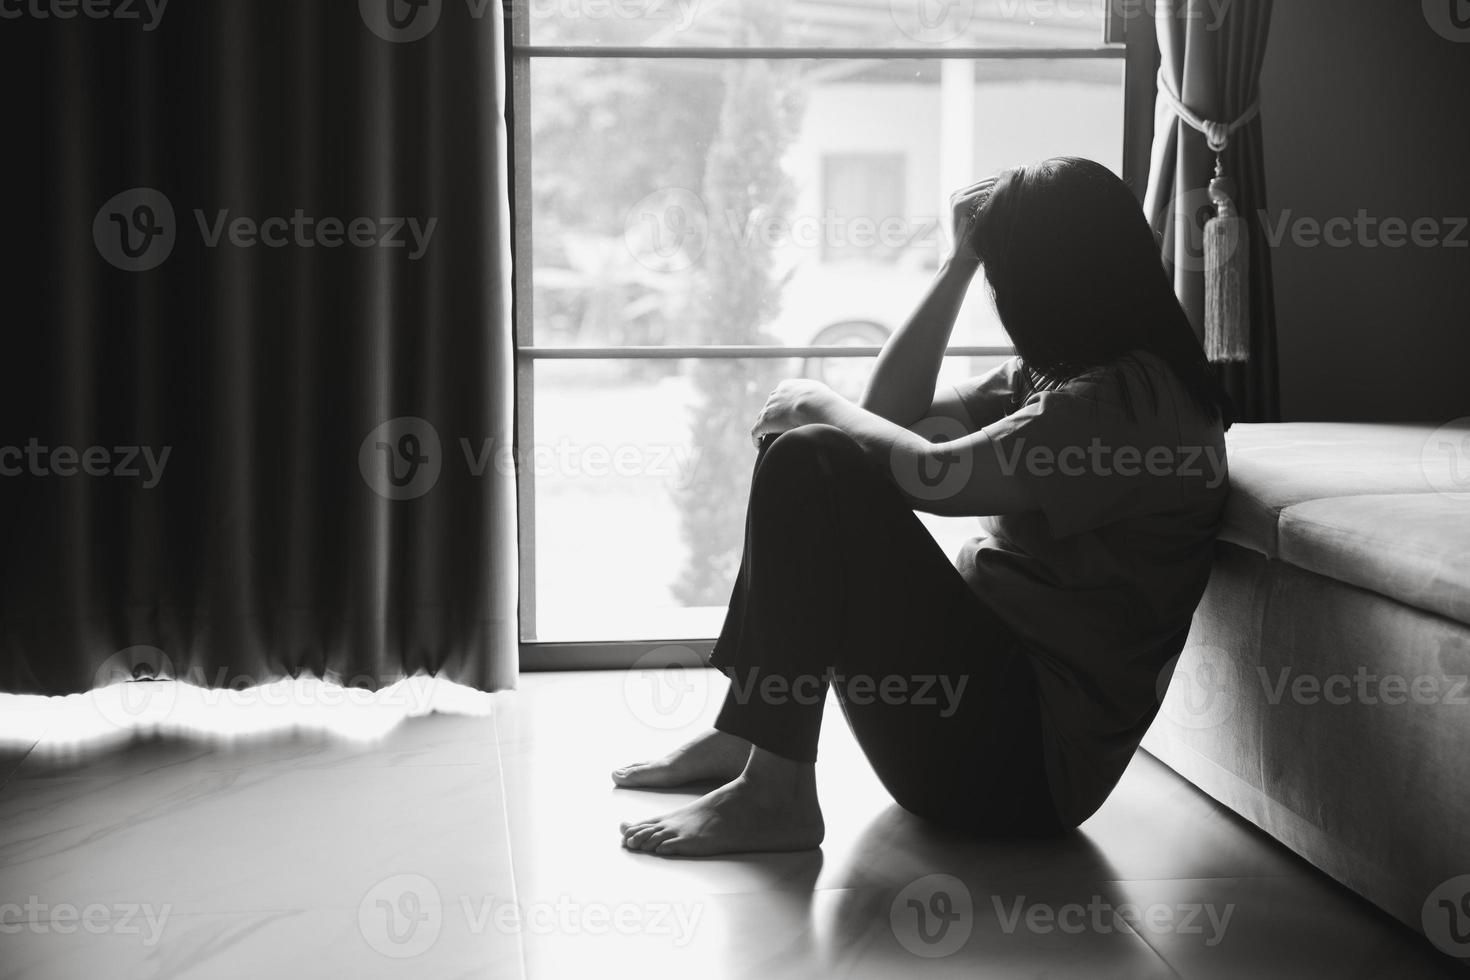 Schizophrenie mit einsamem und traurigem Depressionskonzept der psychischen Gesundheit. depressive frau, die zu hause auf dem boden sitzt und sich in einem dunklen raum unglücklich fühlt. Frauen sind depressiv, ängstlich und unglücklich. foto